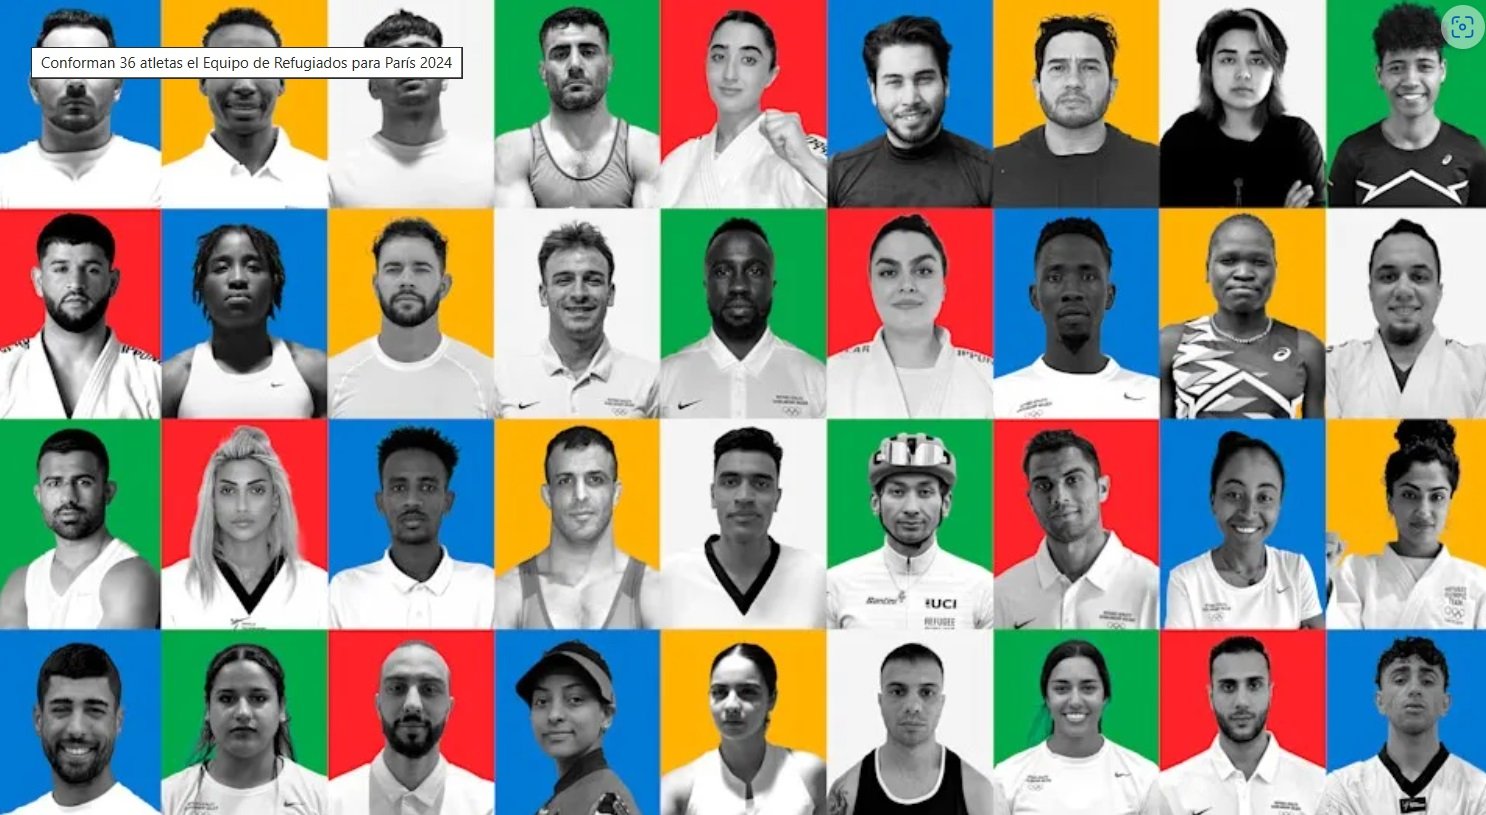 Conforman 36 atletas el Equipo de Refugiados para París 2024